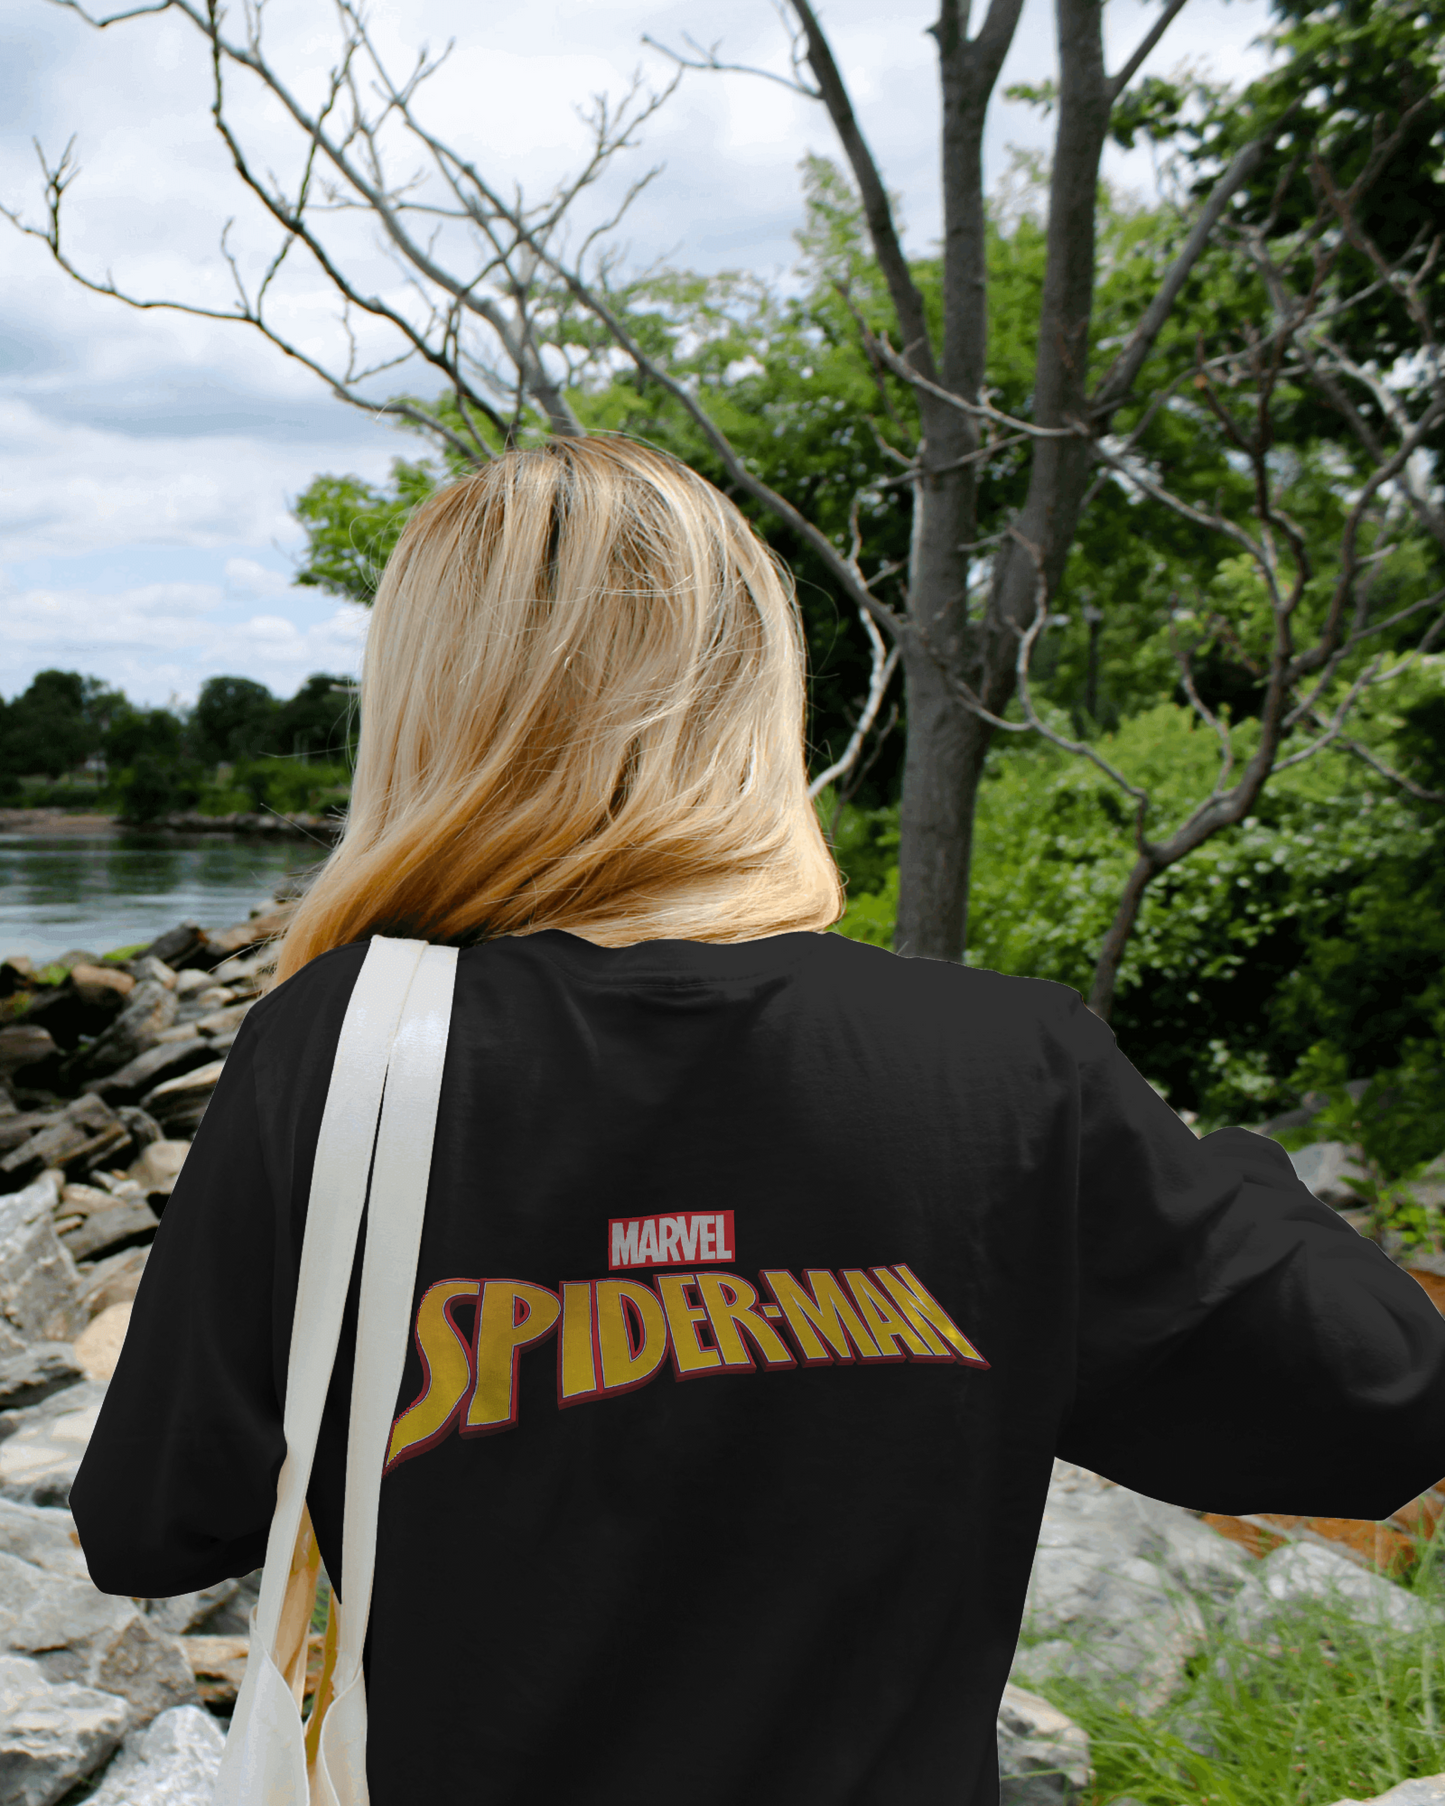 Marvel Spiderman Oversized  Women's Black T shirt